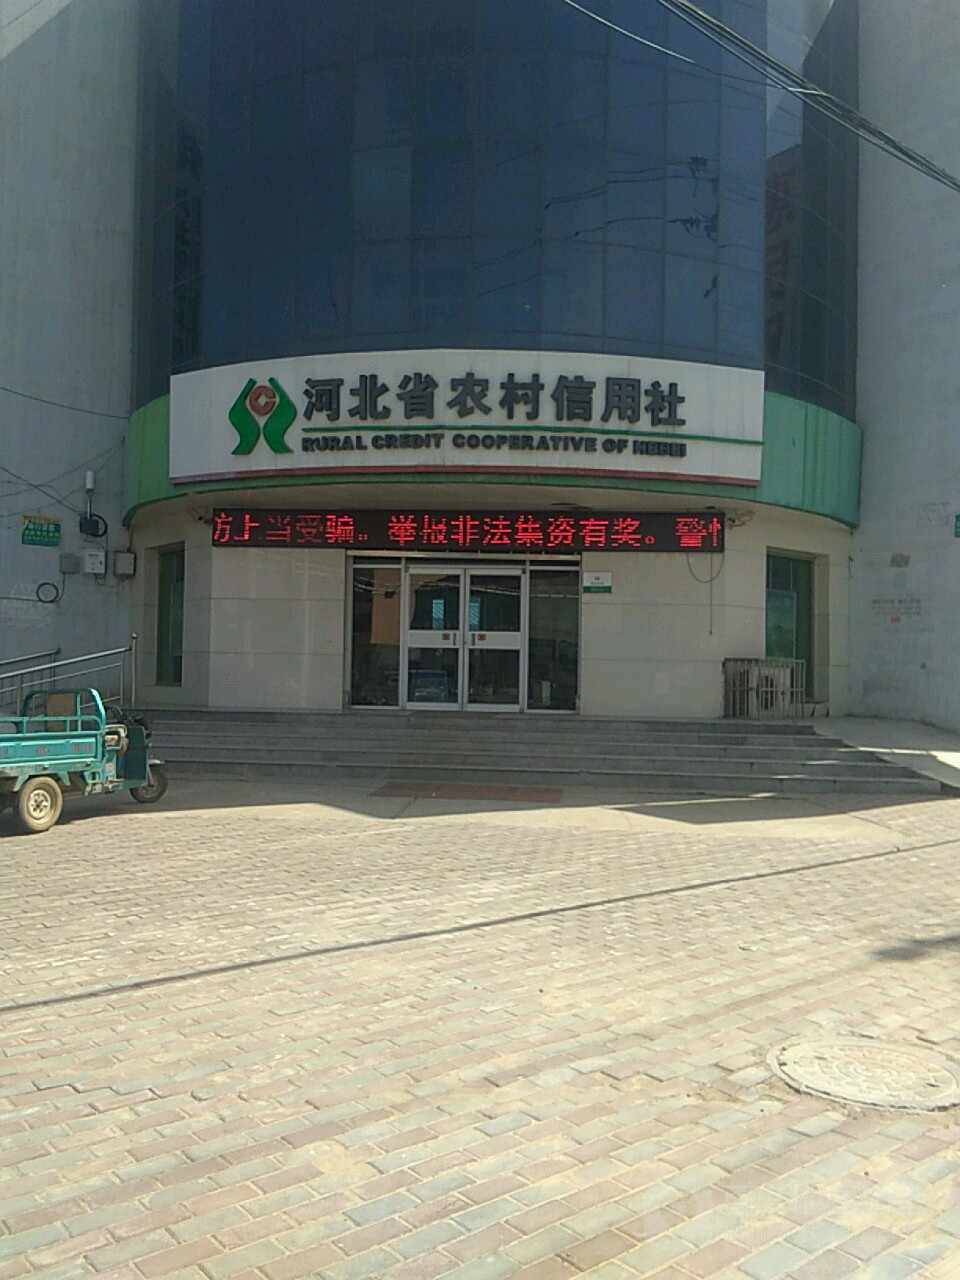 河北省农村信用社